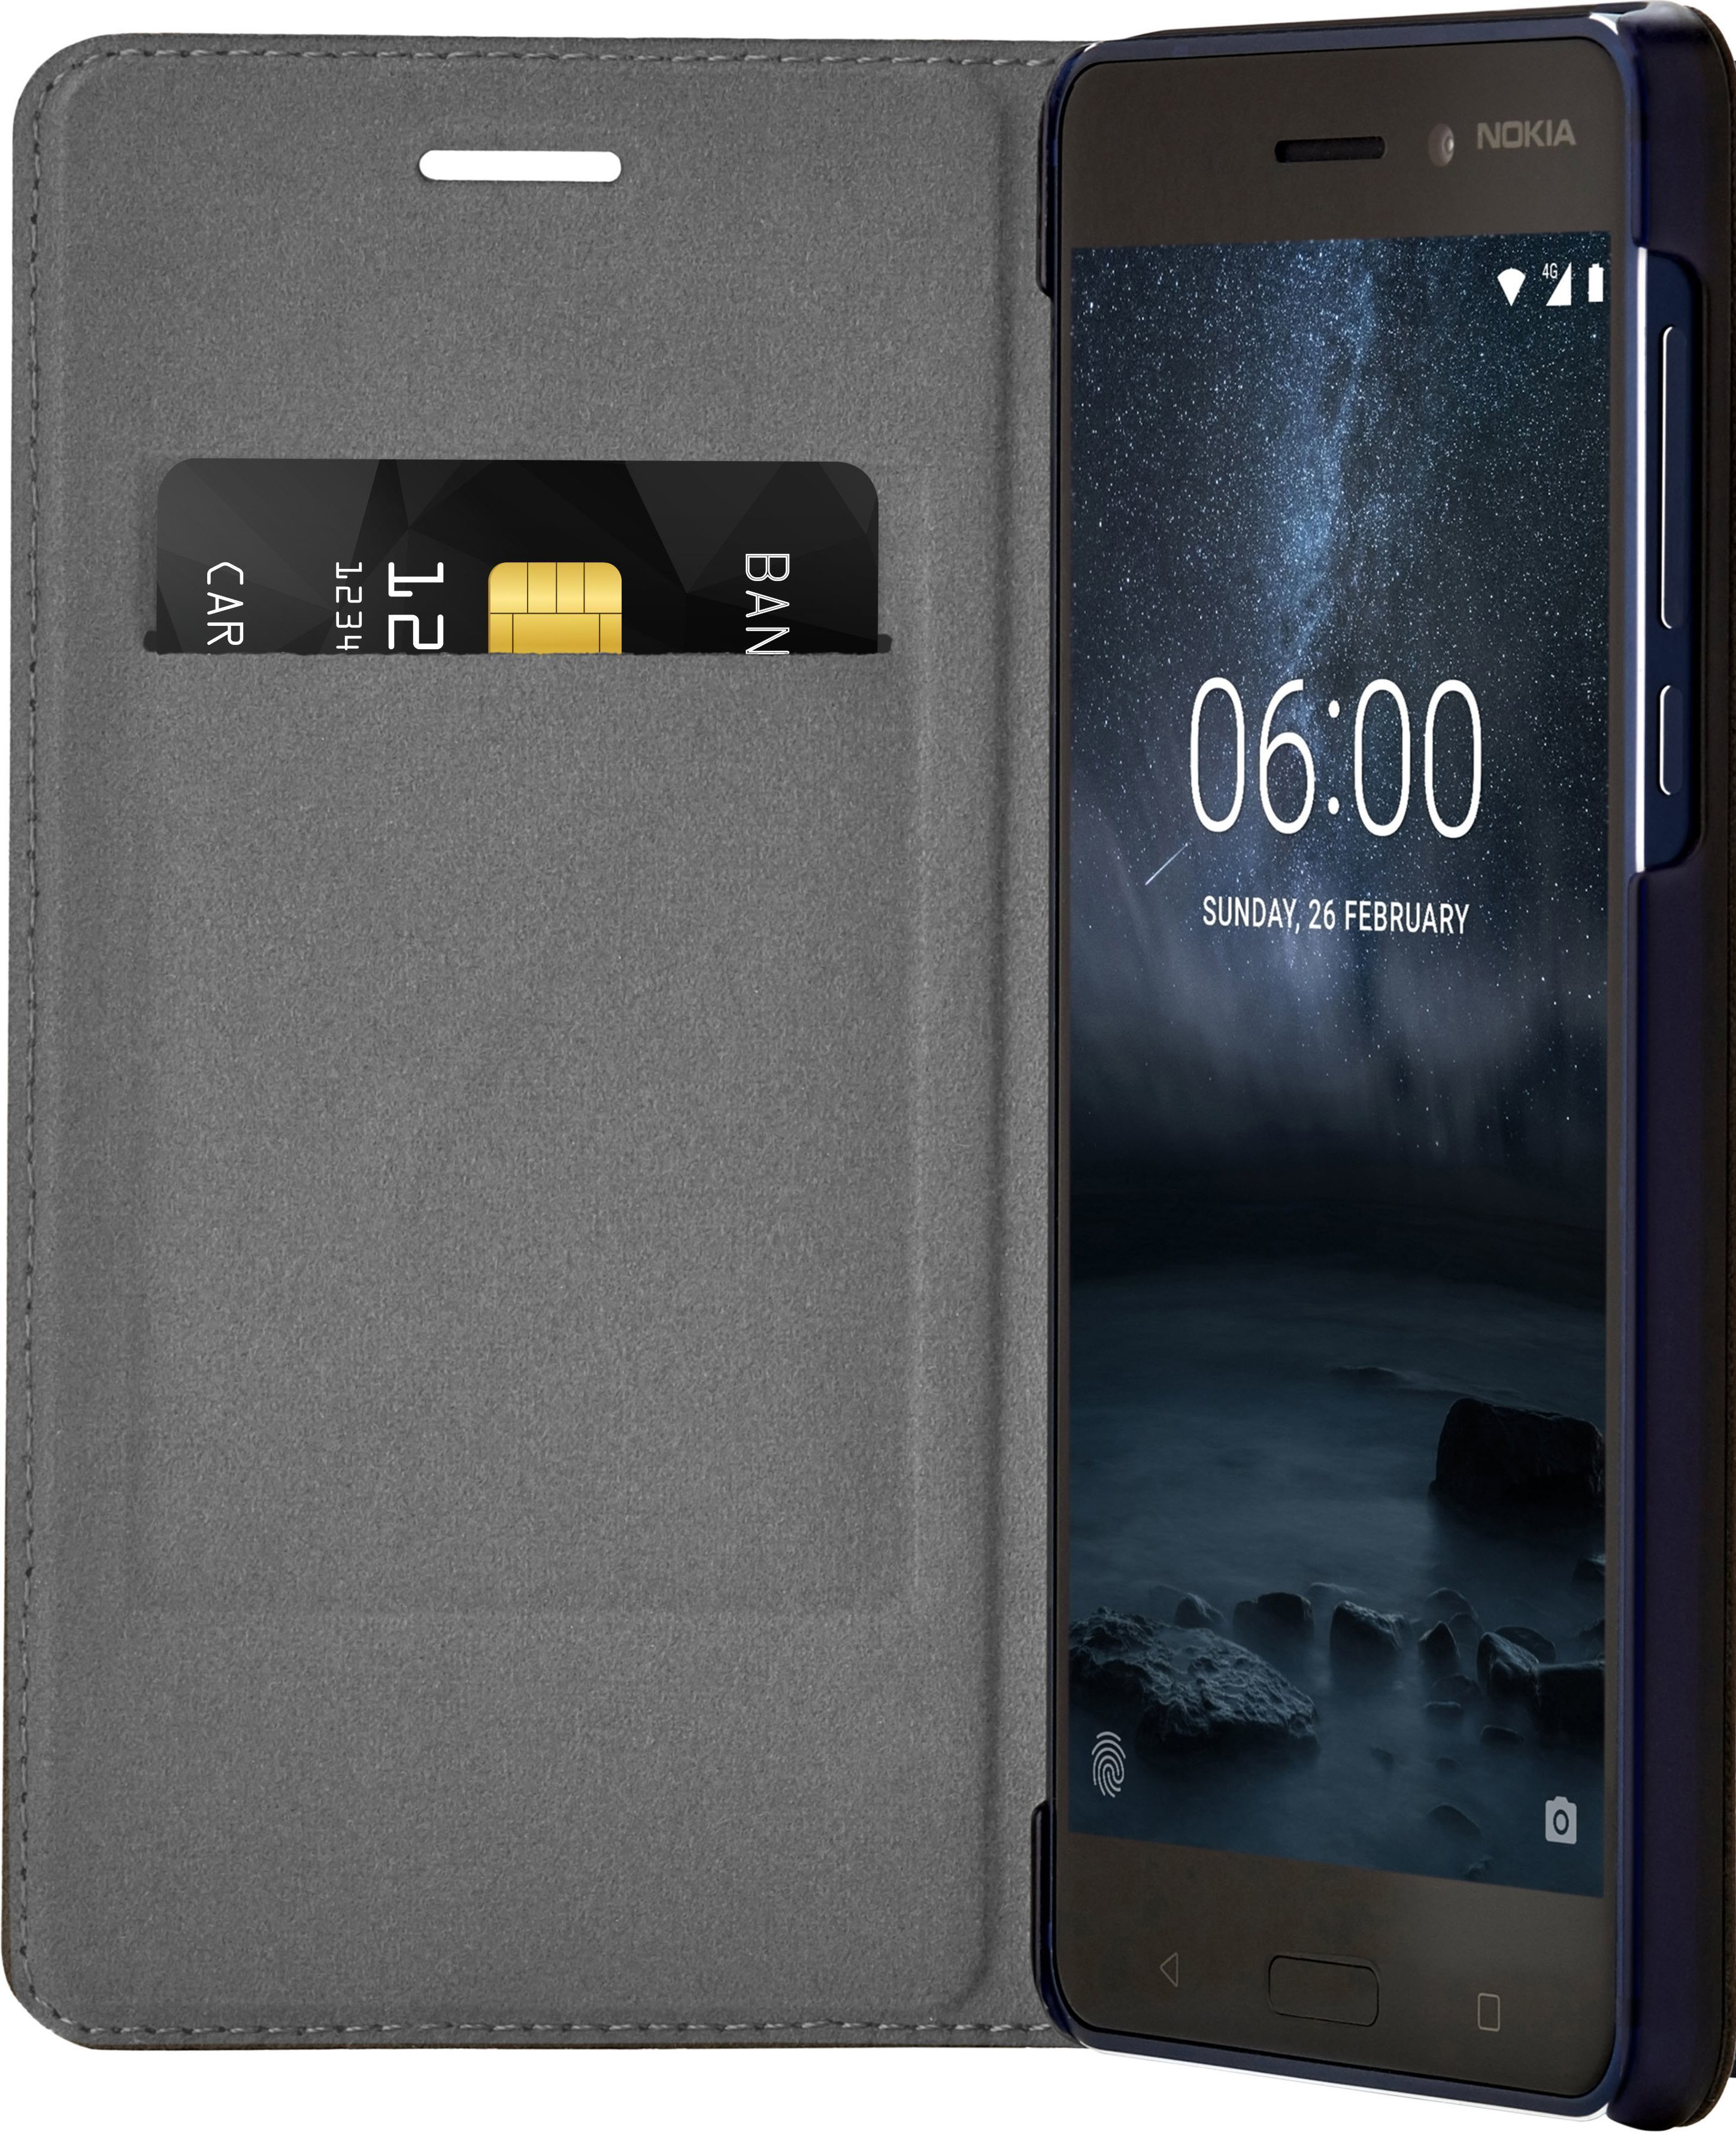 Slim Blau NOKIA Case 6, Nokia, Flip Backcover, CP-301,